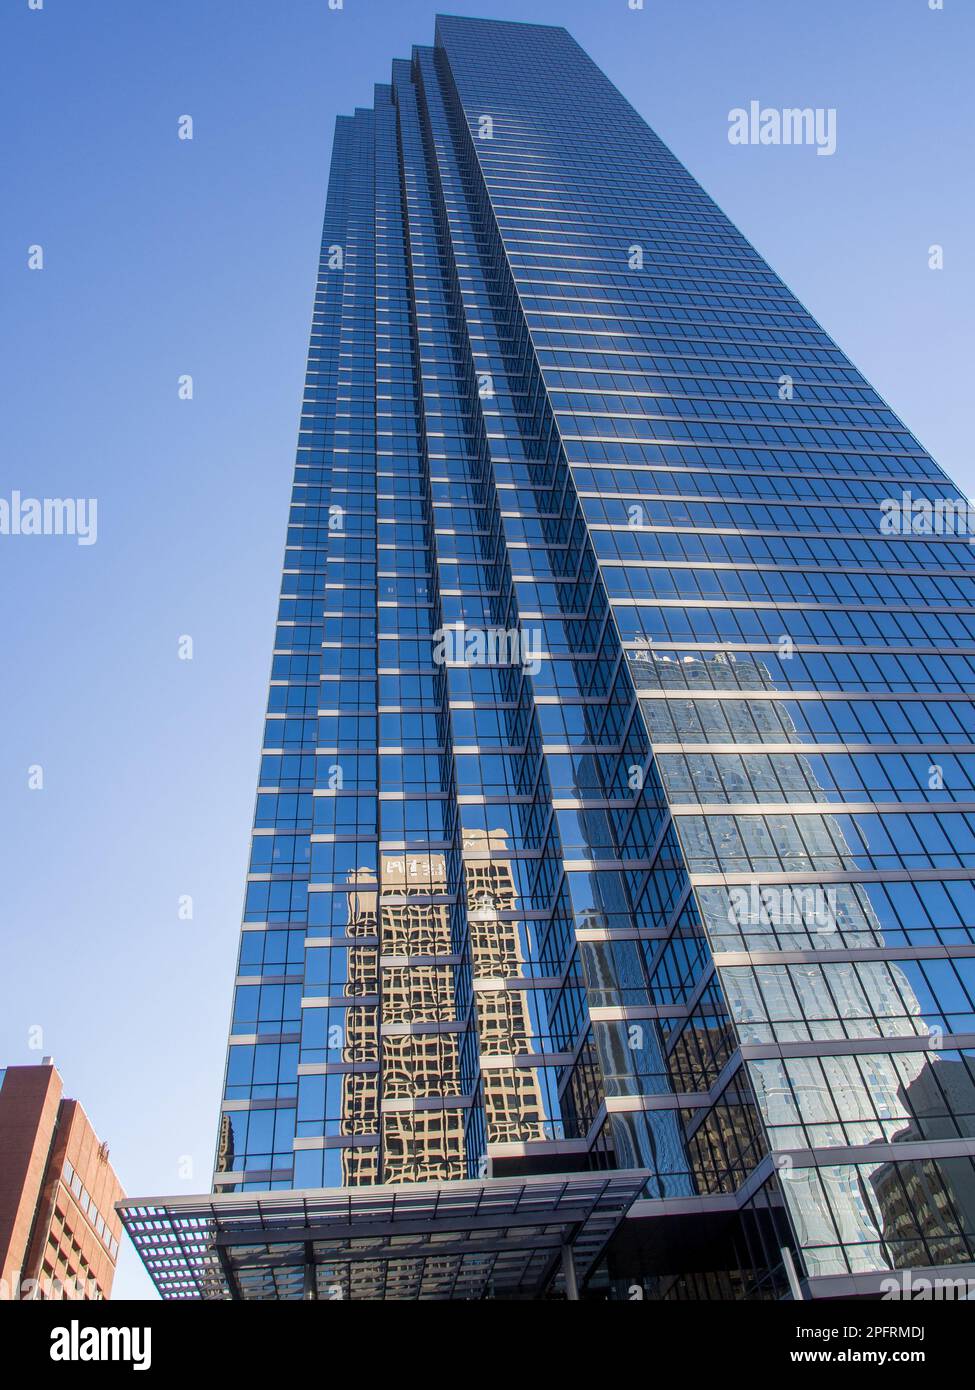 Sumérjase en la impresionante arquitectura del centro de Dallas con esta impresionante imagen de un rascacielos con una fachada de vidrio y reflejos. AGA Foto de stock